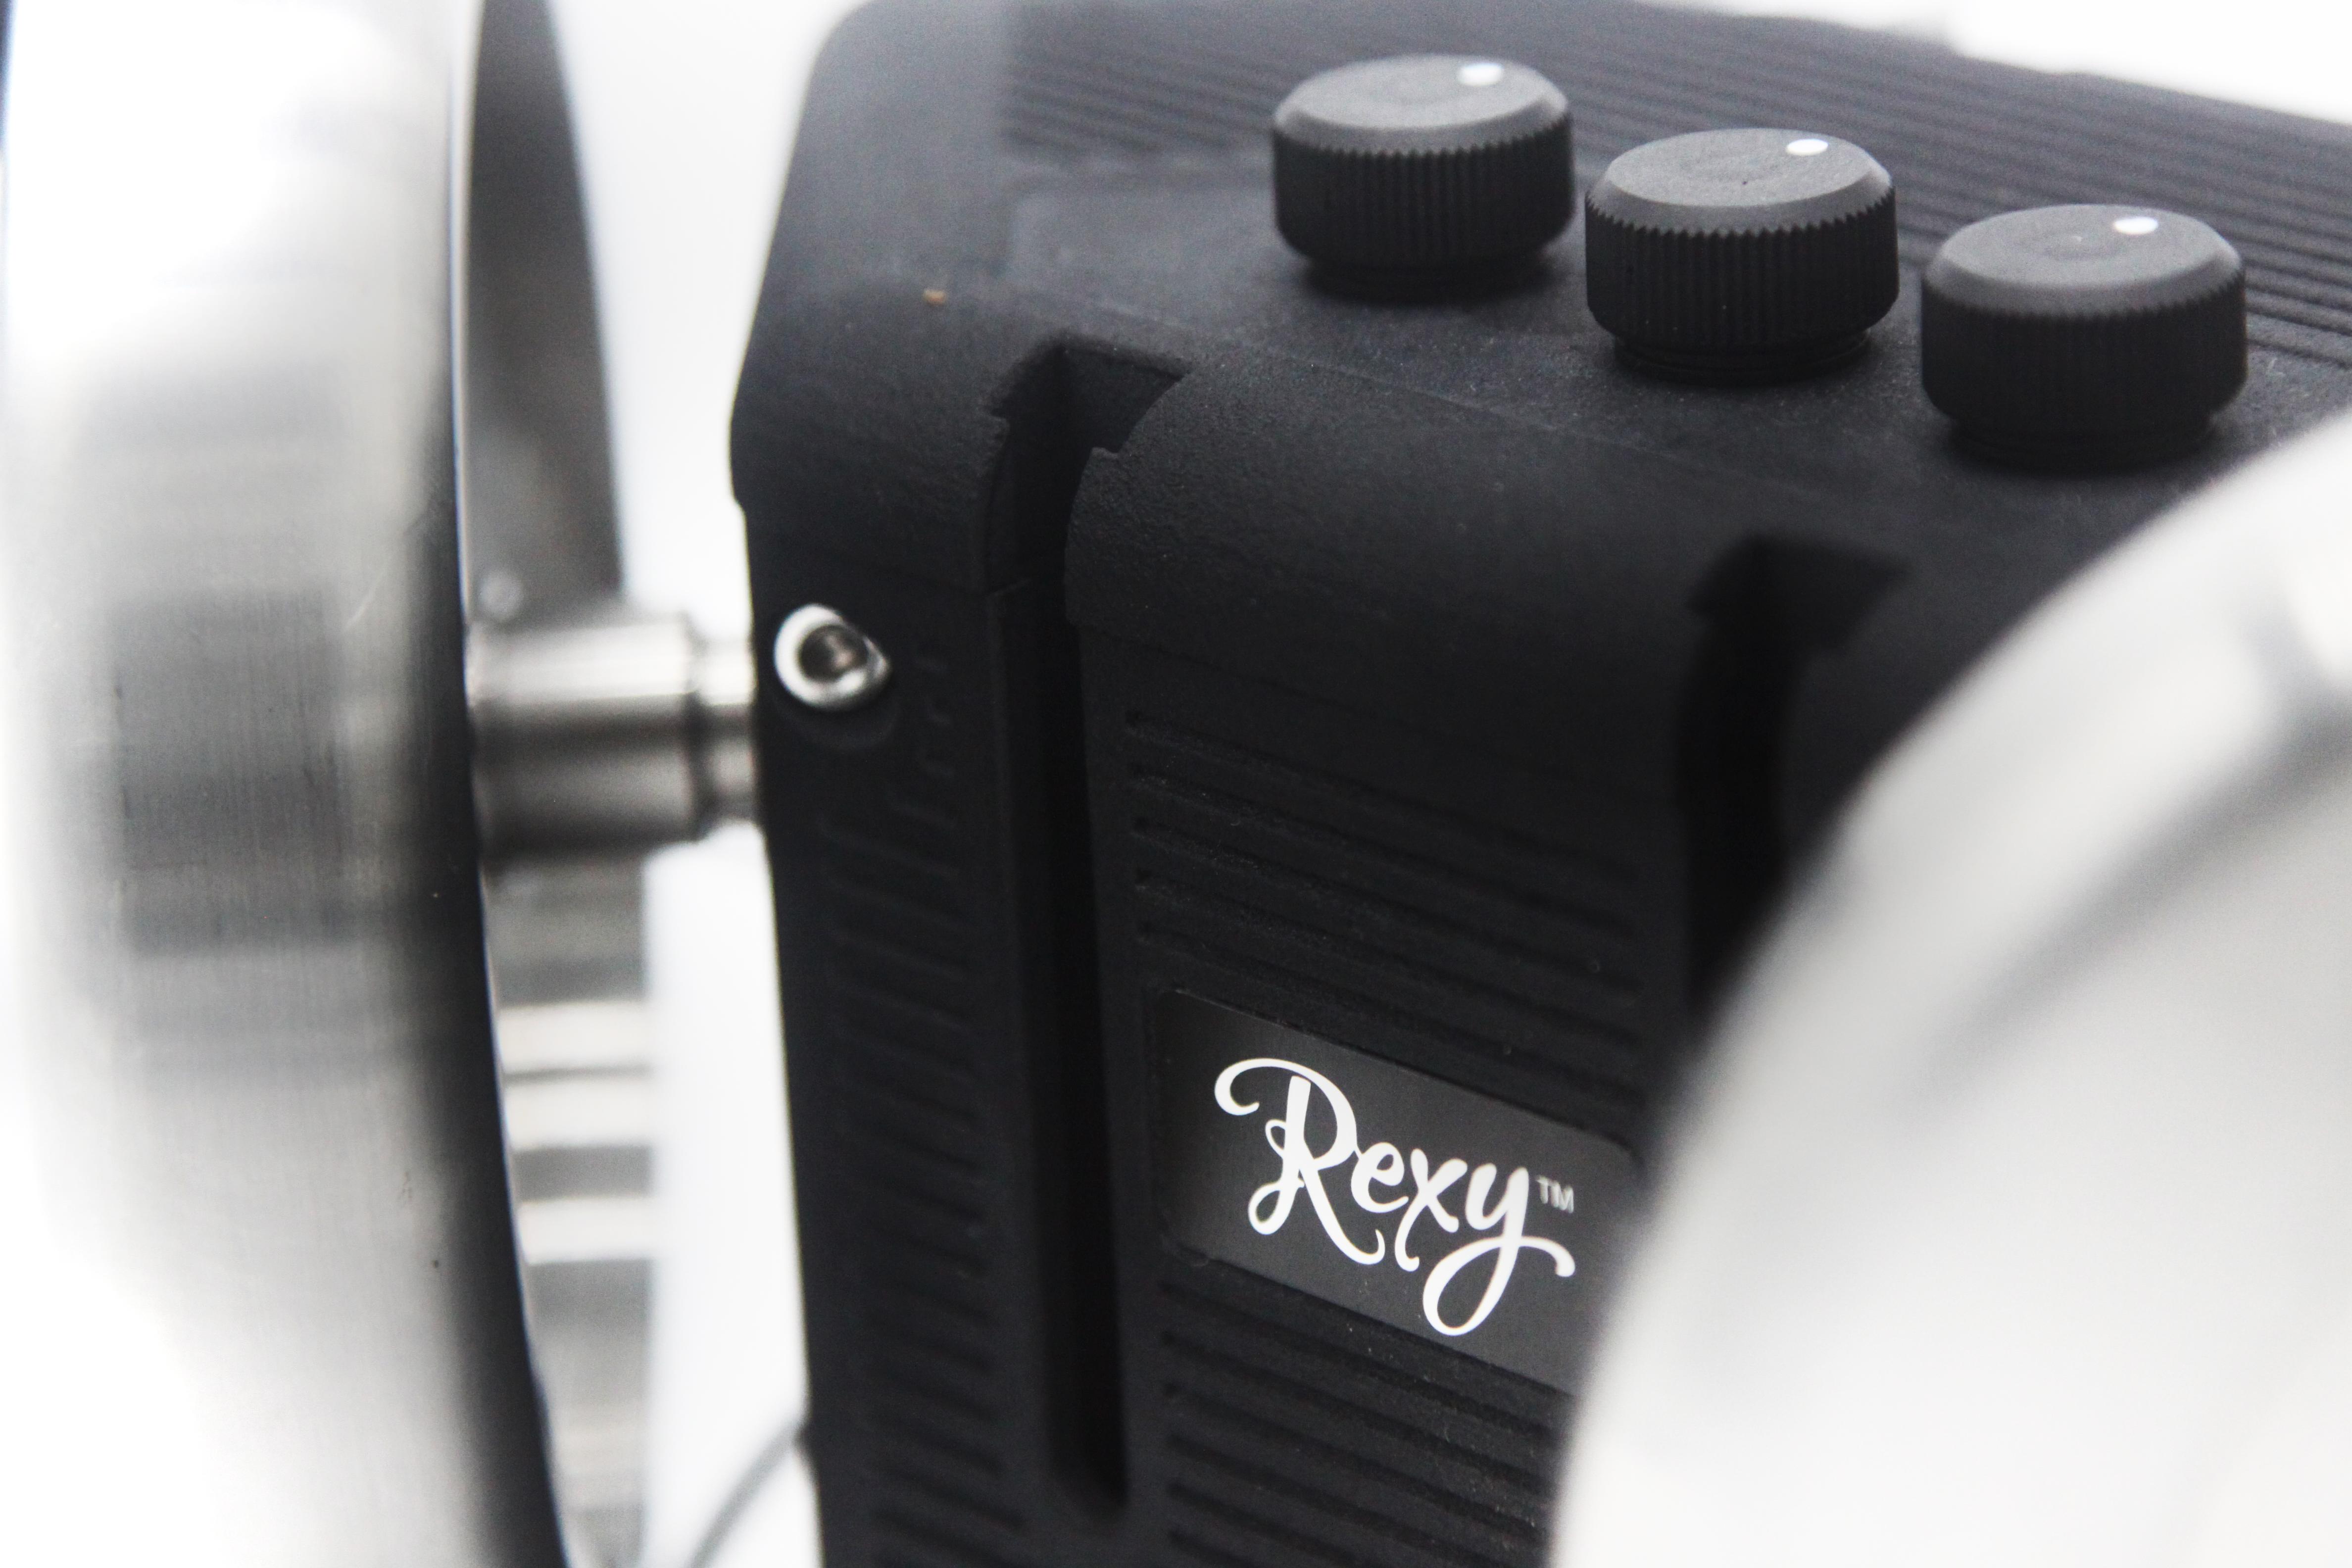 Rexy wheels speed dials